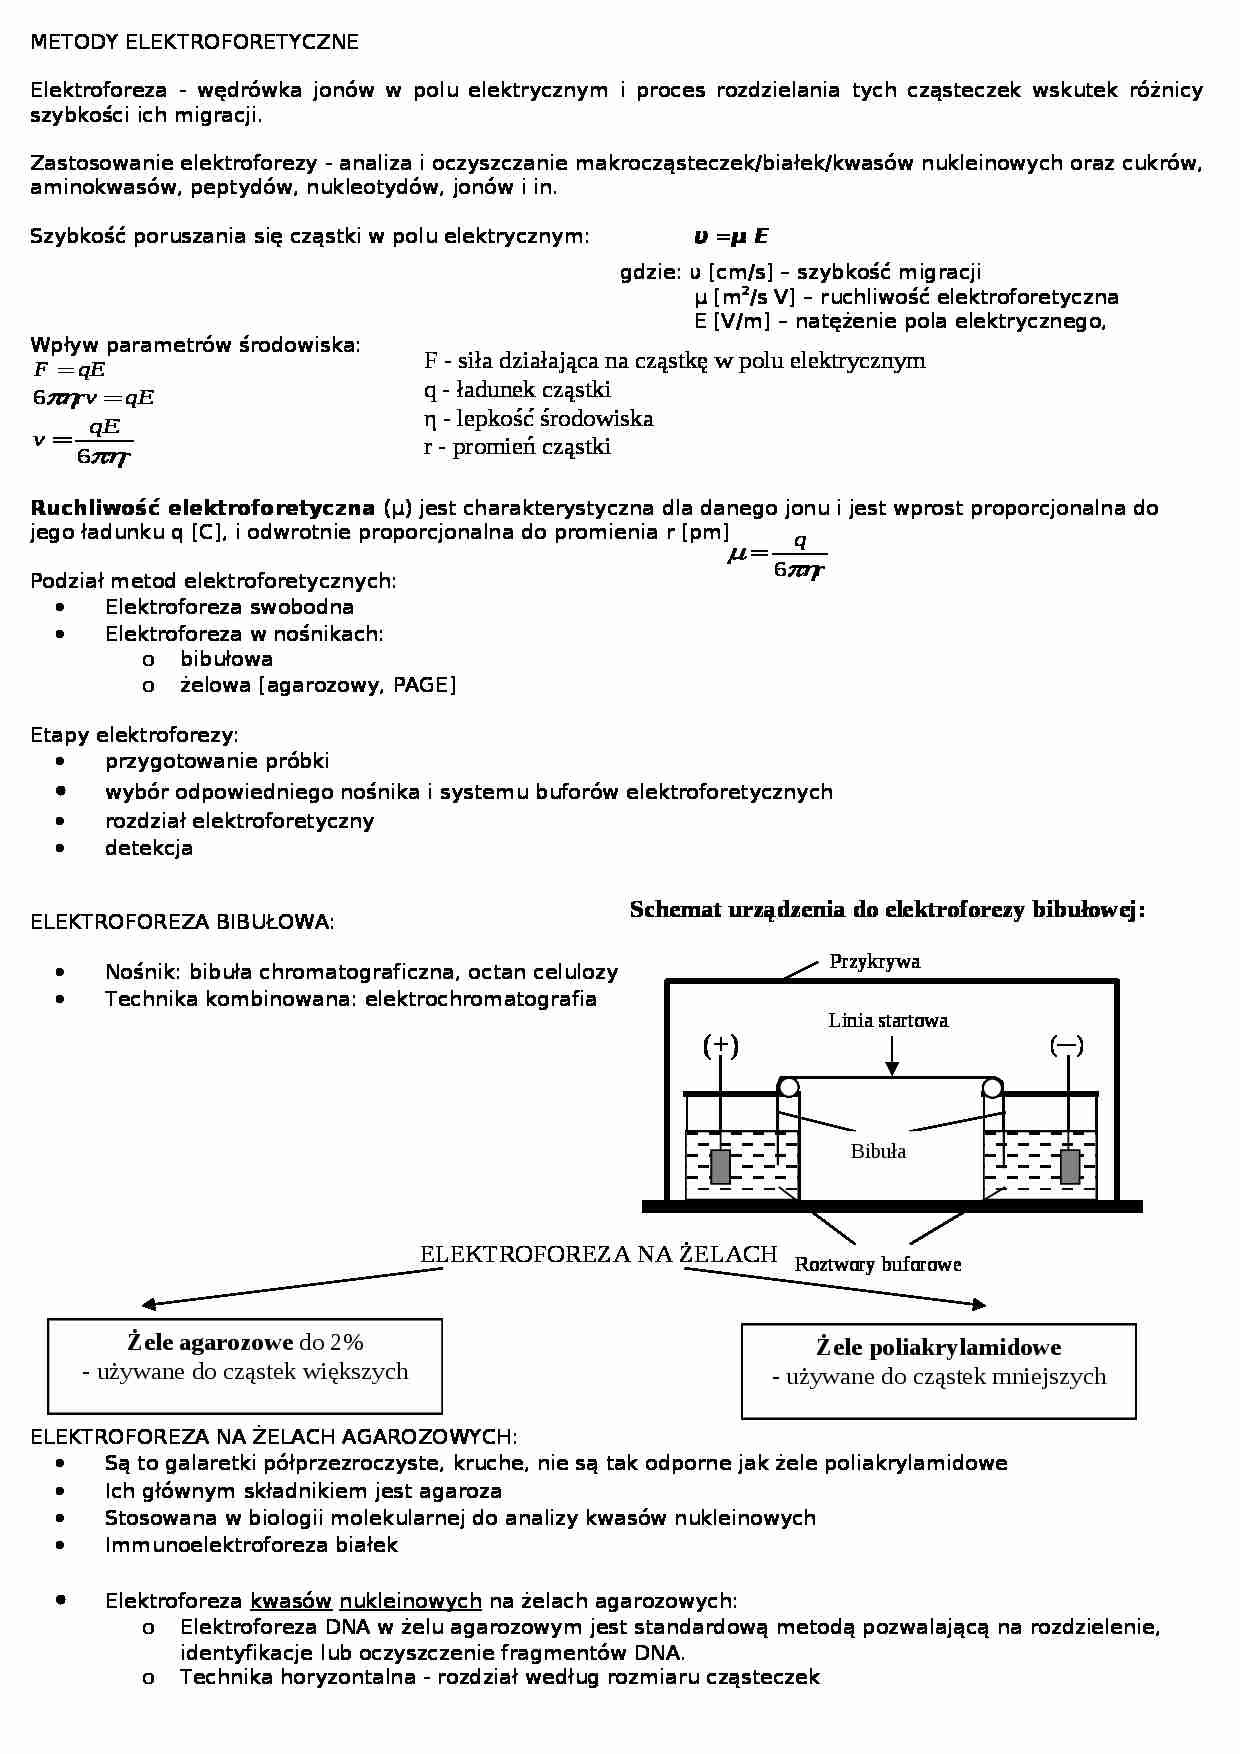 chemiczna analiza instrumentalna - metody elektroforetyczne - strona 1